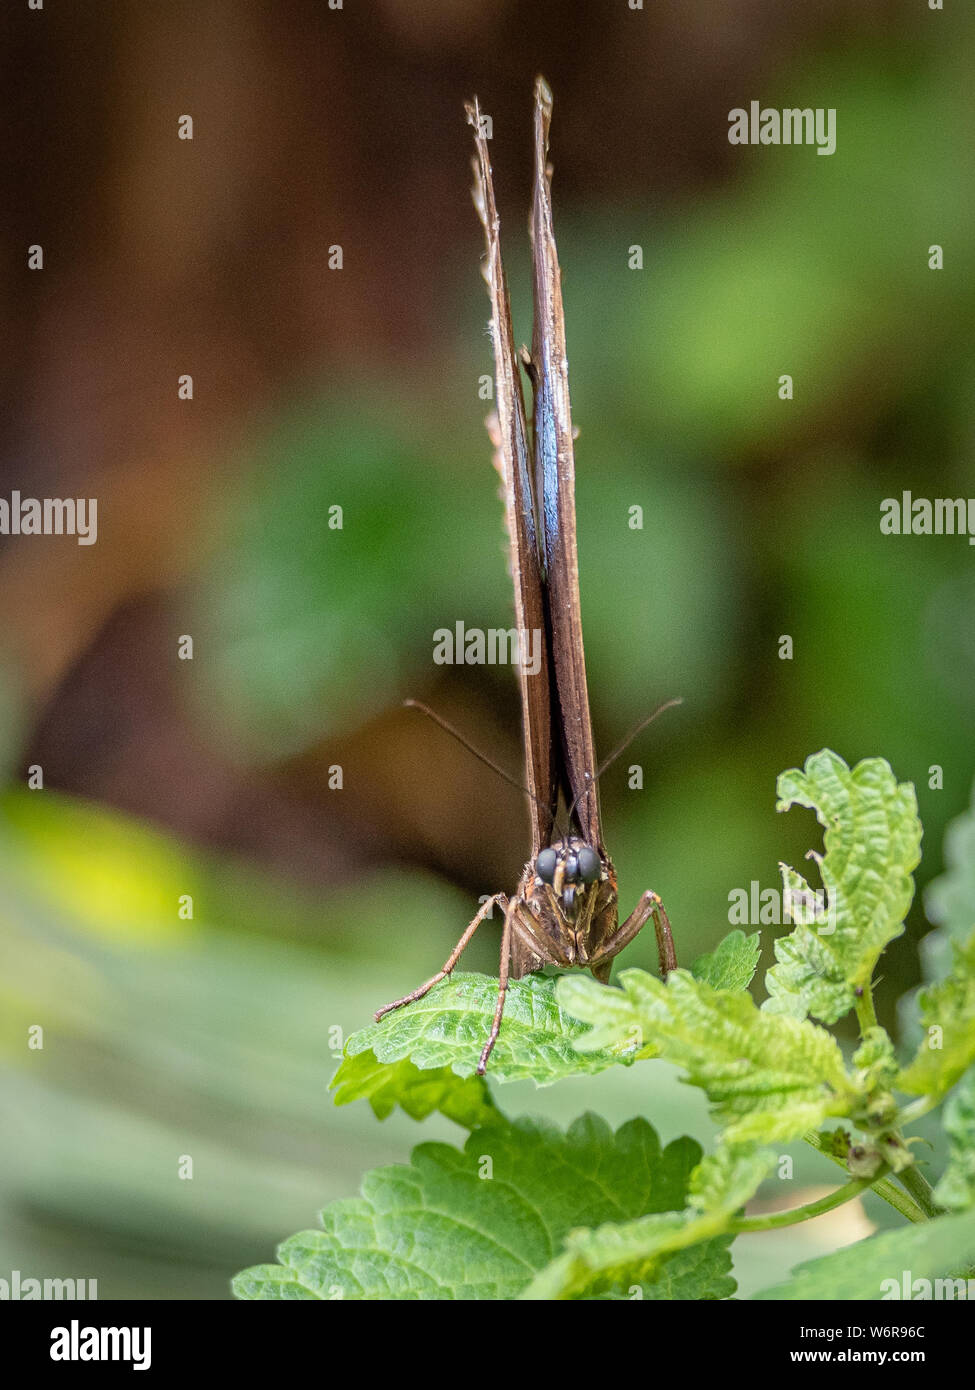 Imagen frontal de mariposa con las alas cerradas, imagen vertical de insecto alado Foto de stock